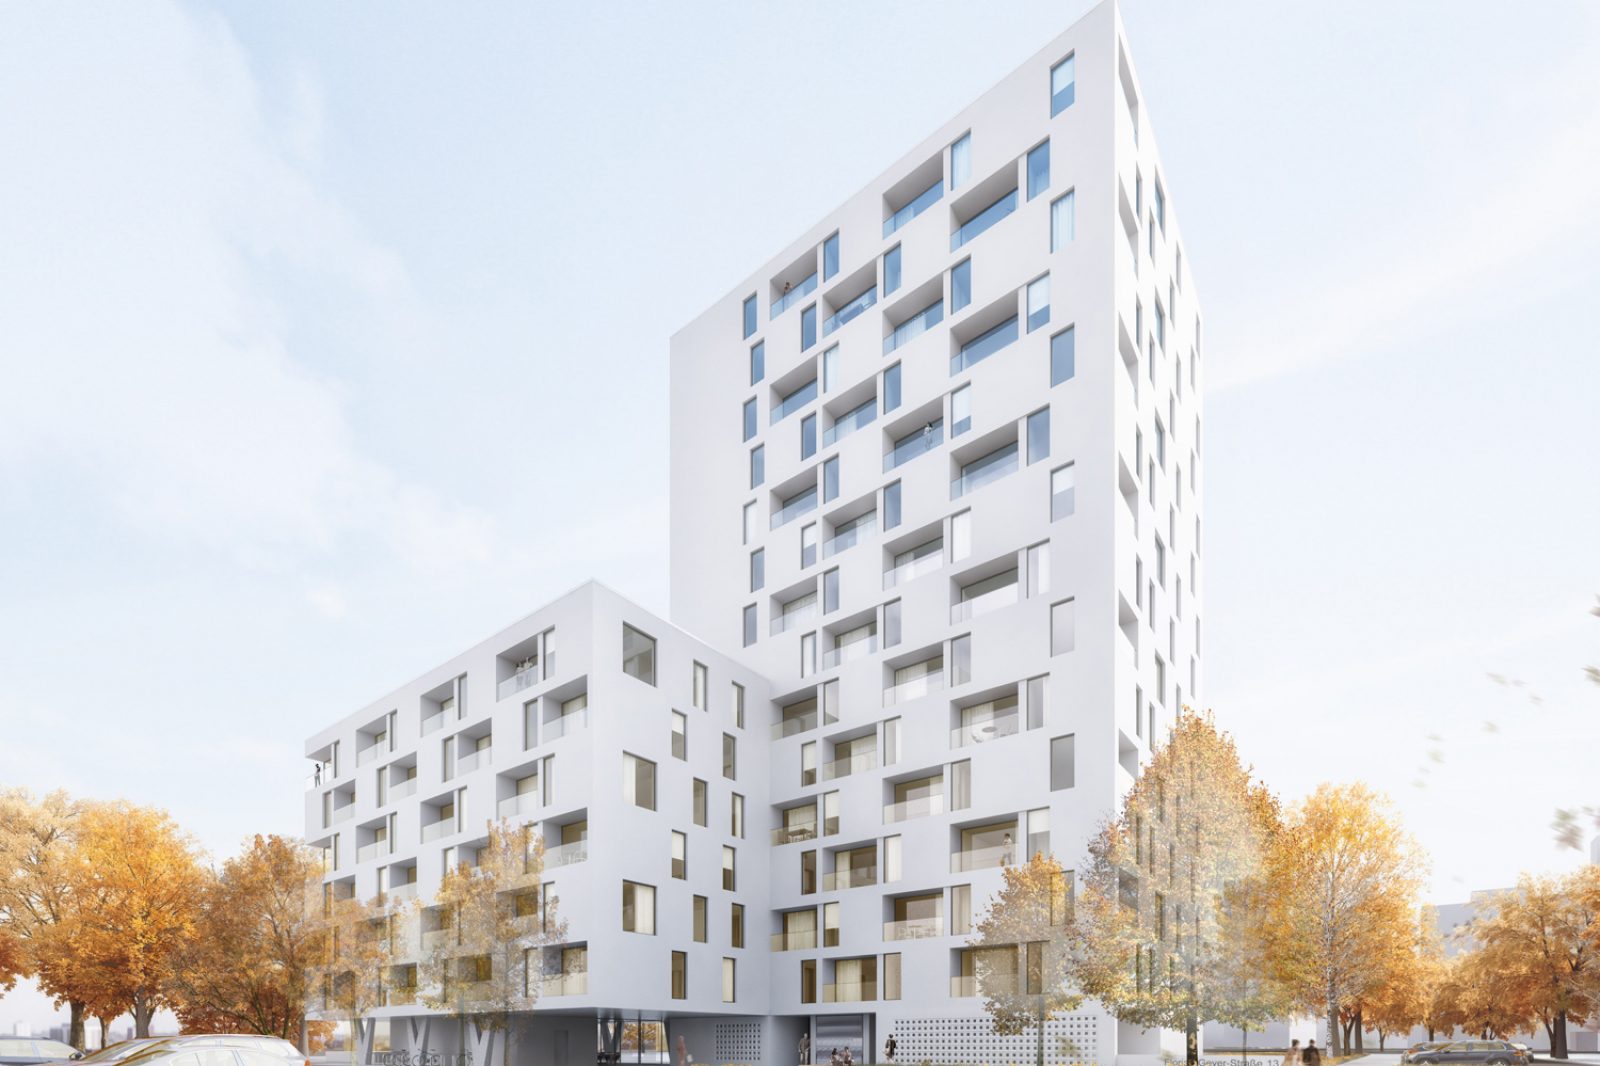 NHzwo_Wohnungsbau-Florian-Geyer_02_Perspektive-Quartiersplatz